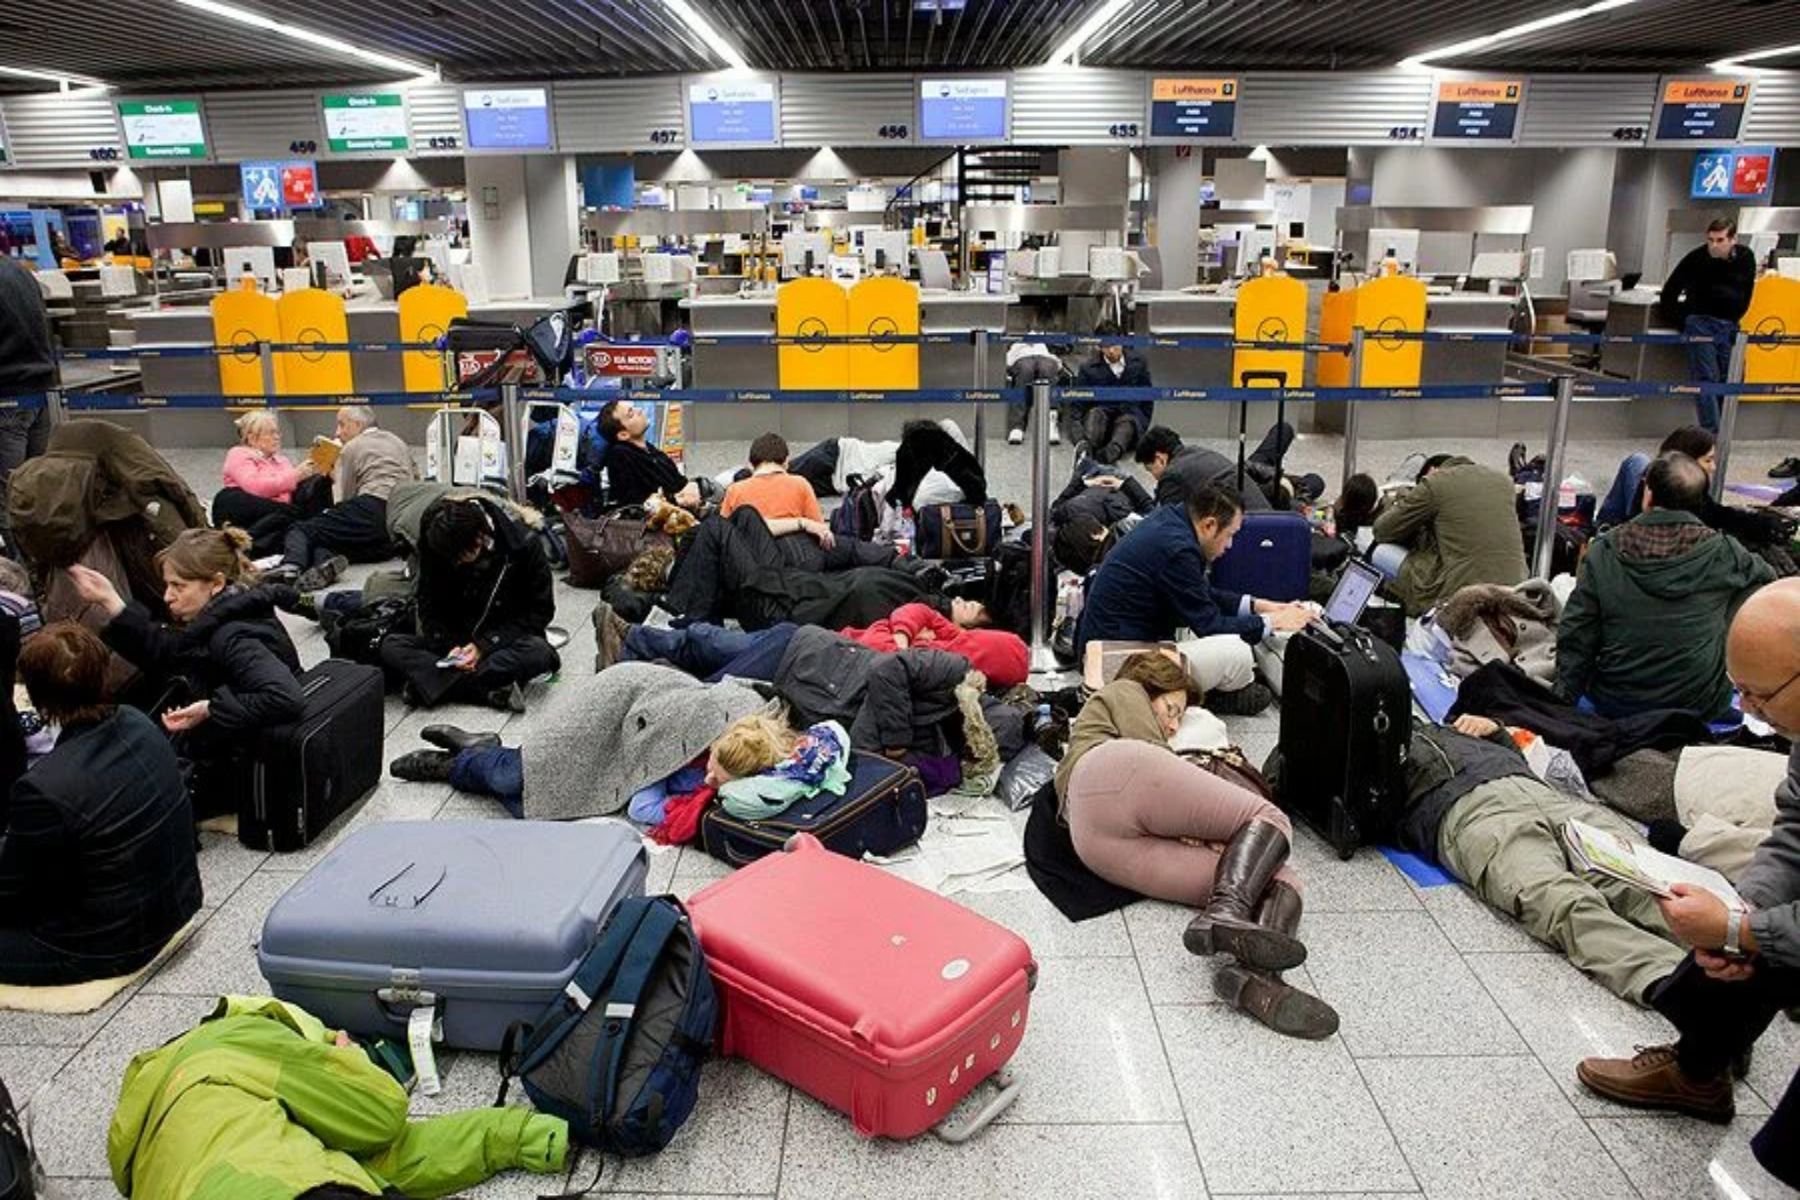 В аэропорту можно сдать. Люди спят в аэропорту. Много людей в аэропорту. Задержка рейса в аэропорту. Застряли в аэропорту.